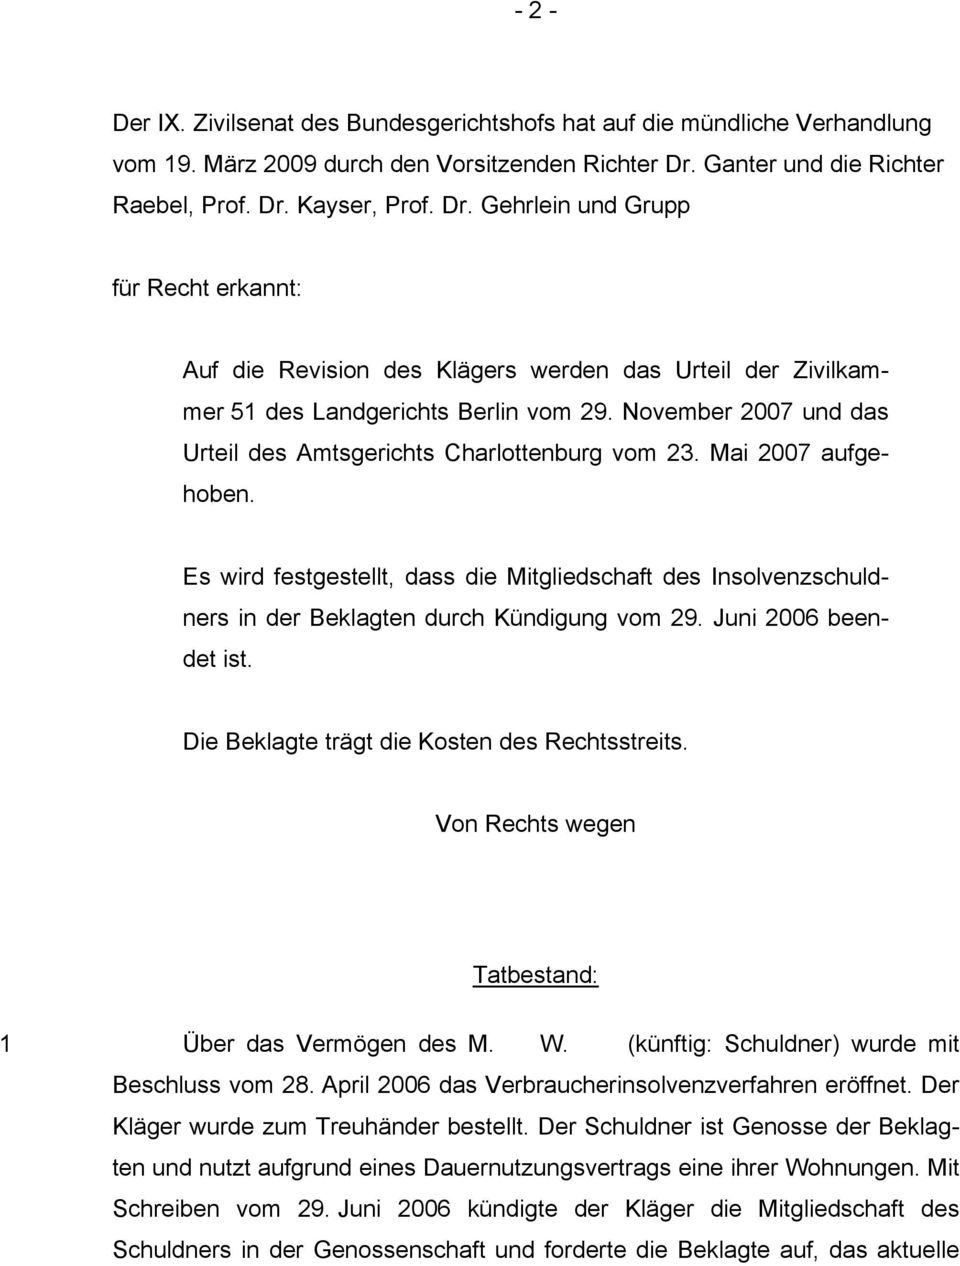 November 2007 und das Urteil des Amtsgerichts Charlottenburg vom 23. Mai 2007 aufgehoben. Es wird festgestellt, dass die Mitgliedschaft des Insolvenzschuldners in der Beklagten durch Kündigung vom 29.